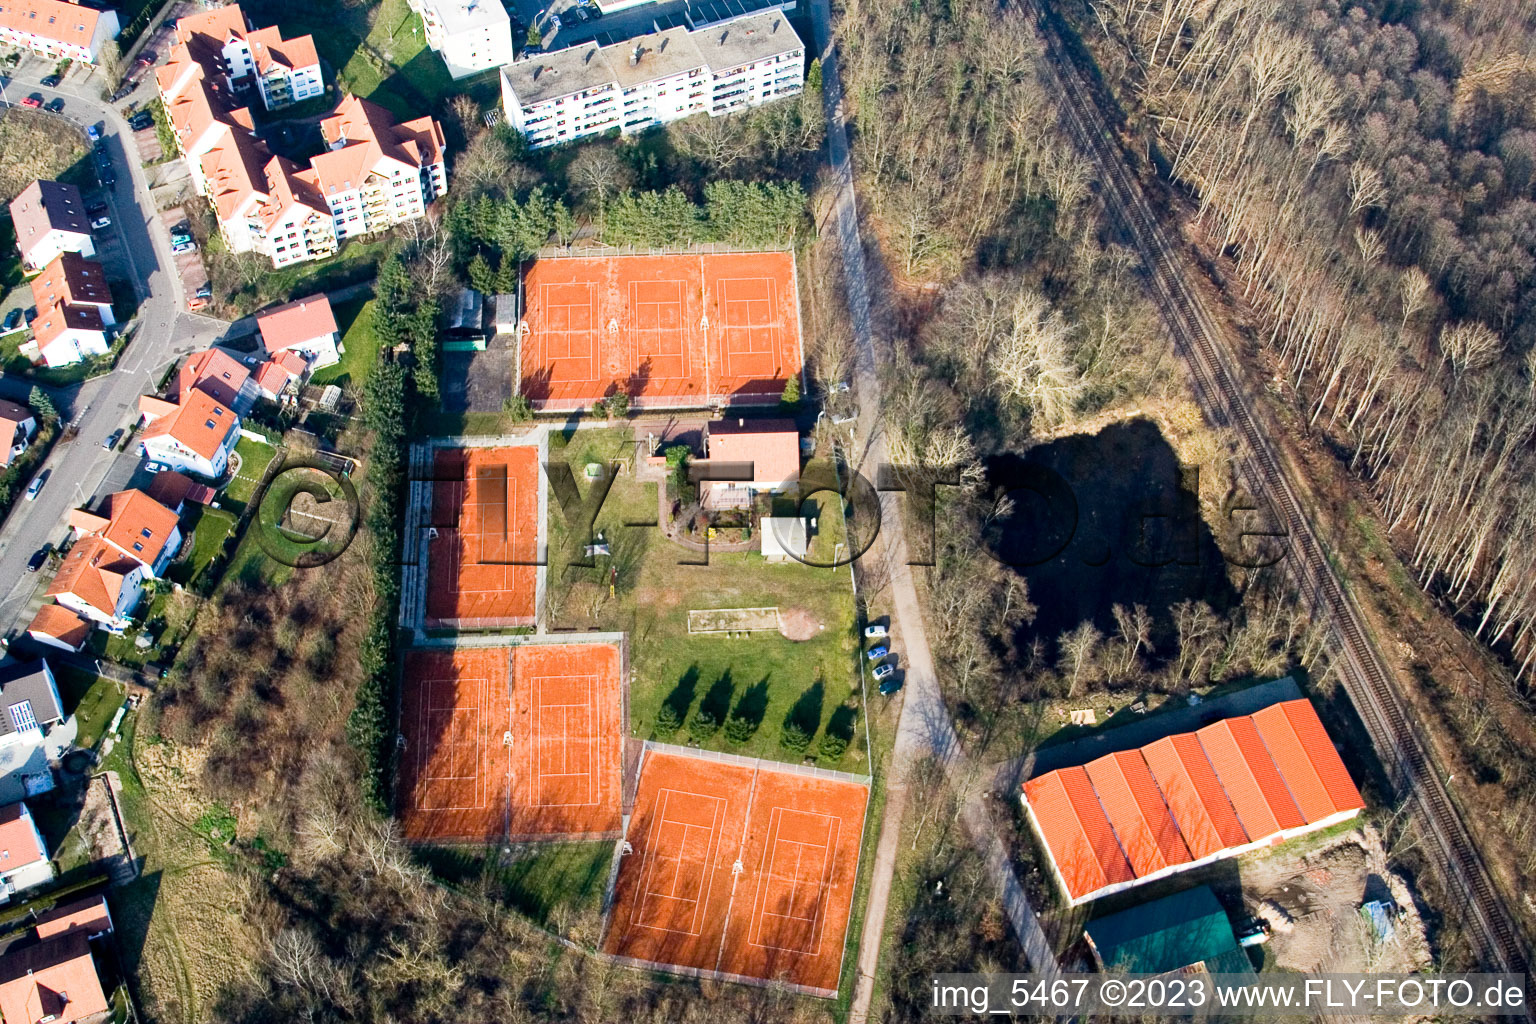 Vue oblique de Club de tennis à Jockgrim dans le département Rhénanie-Palatinat, Allemagne